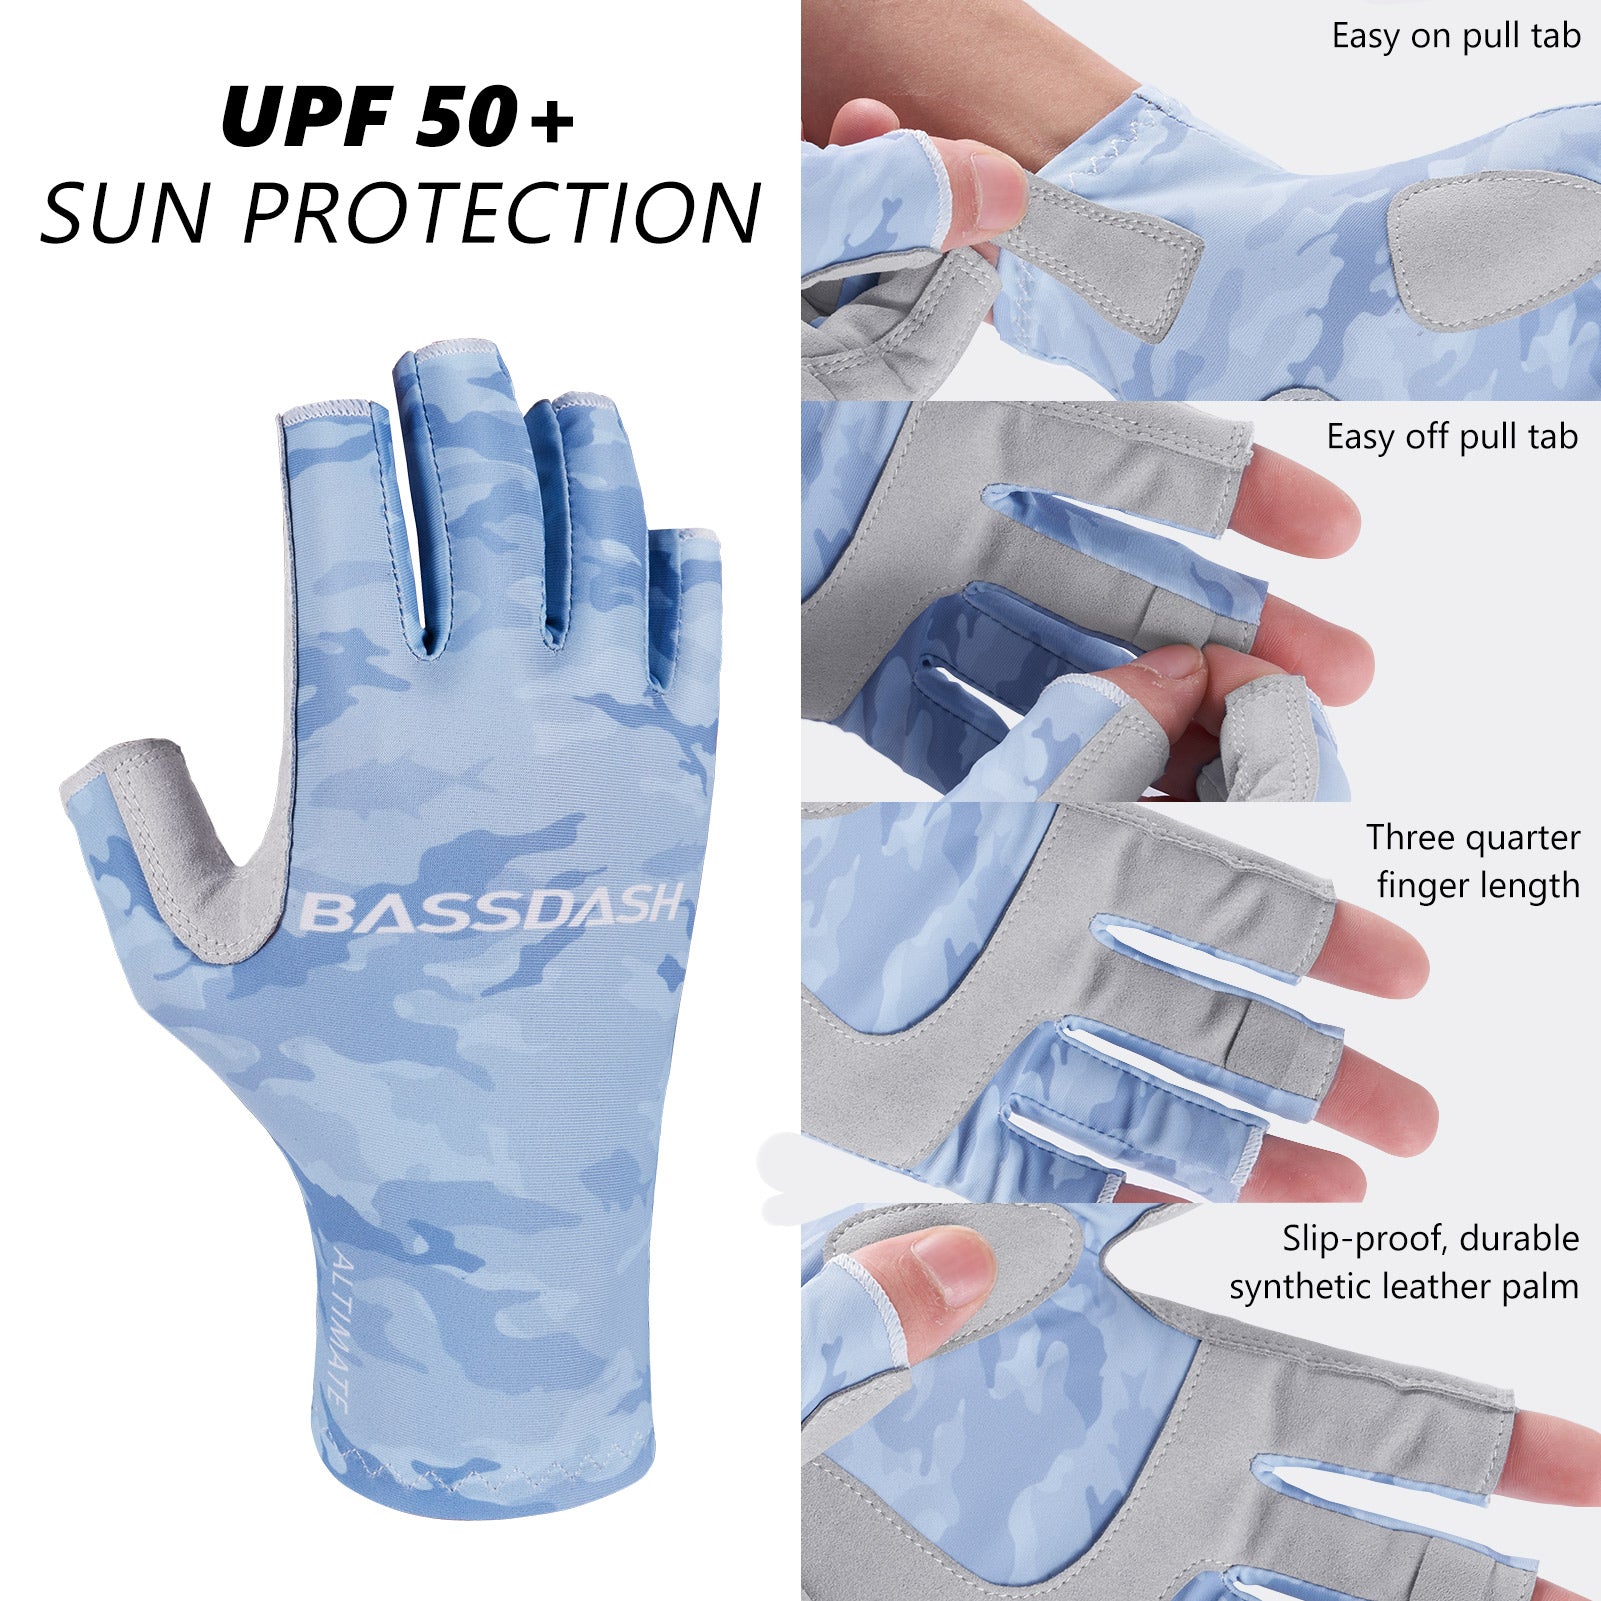 Non Slip Nylon Fishing Hand Gloves For Bike Fast Drying, Water